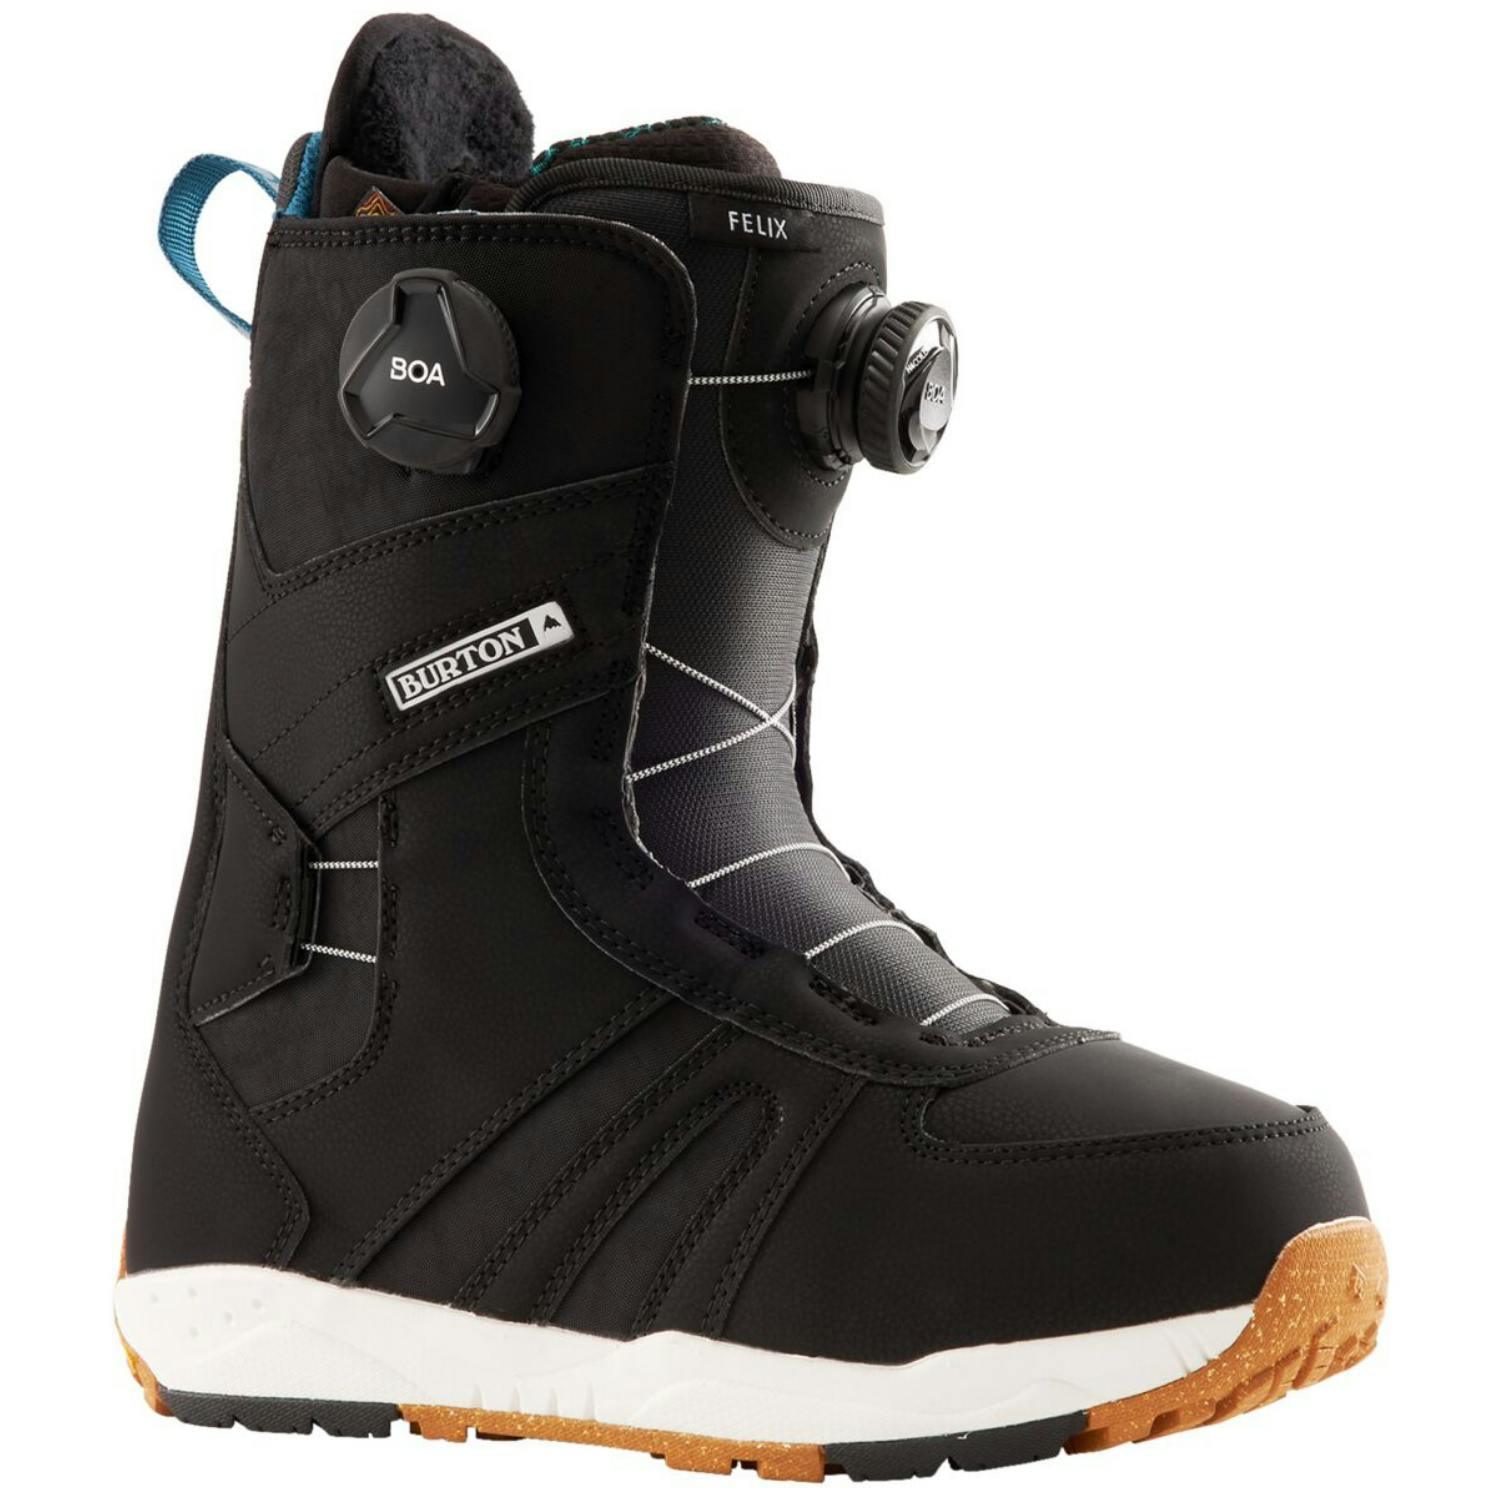 Burton Felix BOA Snowboard Boots · Women's · 2022